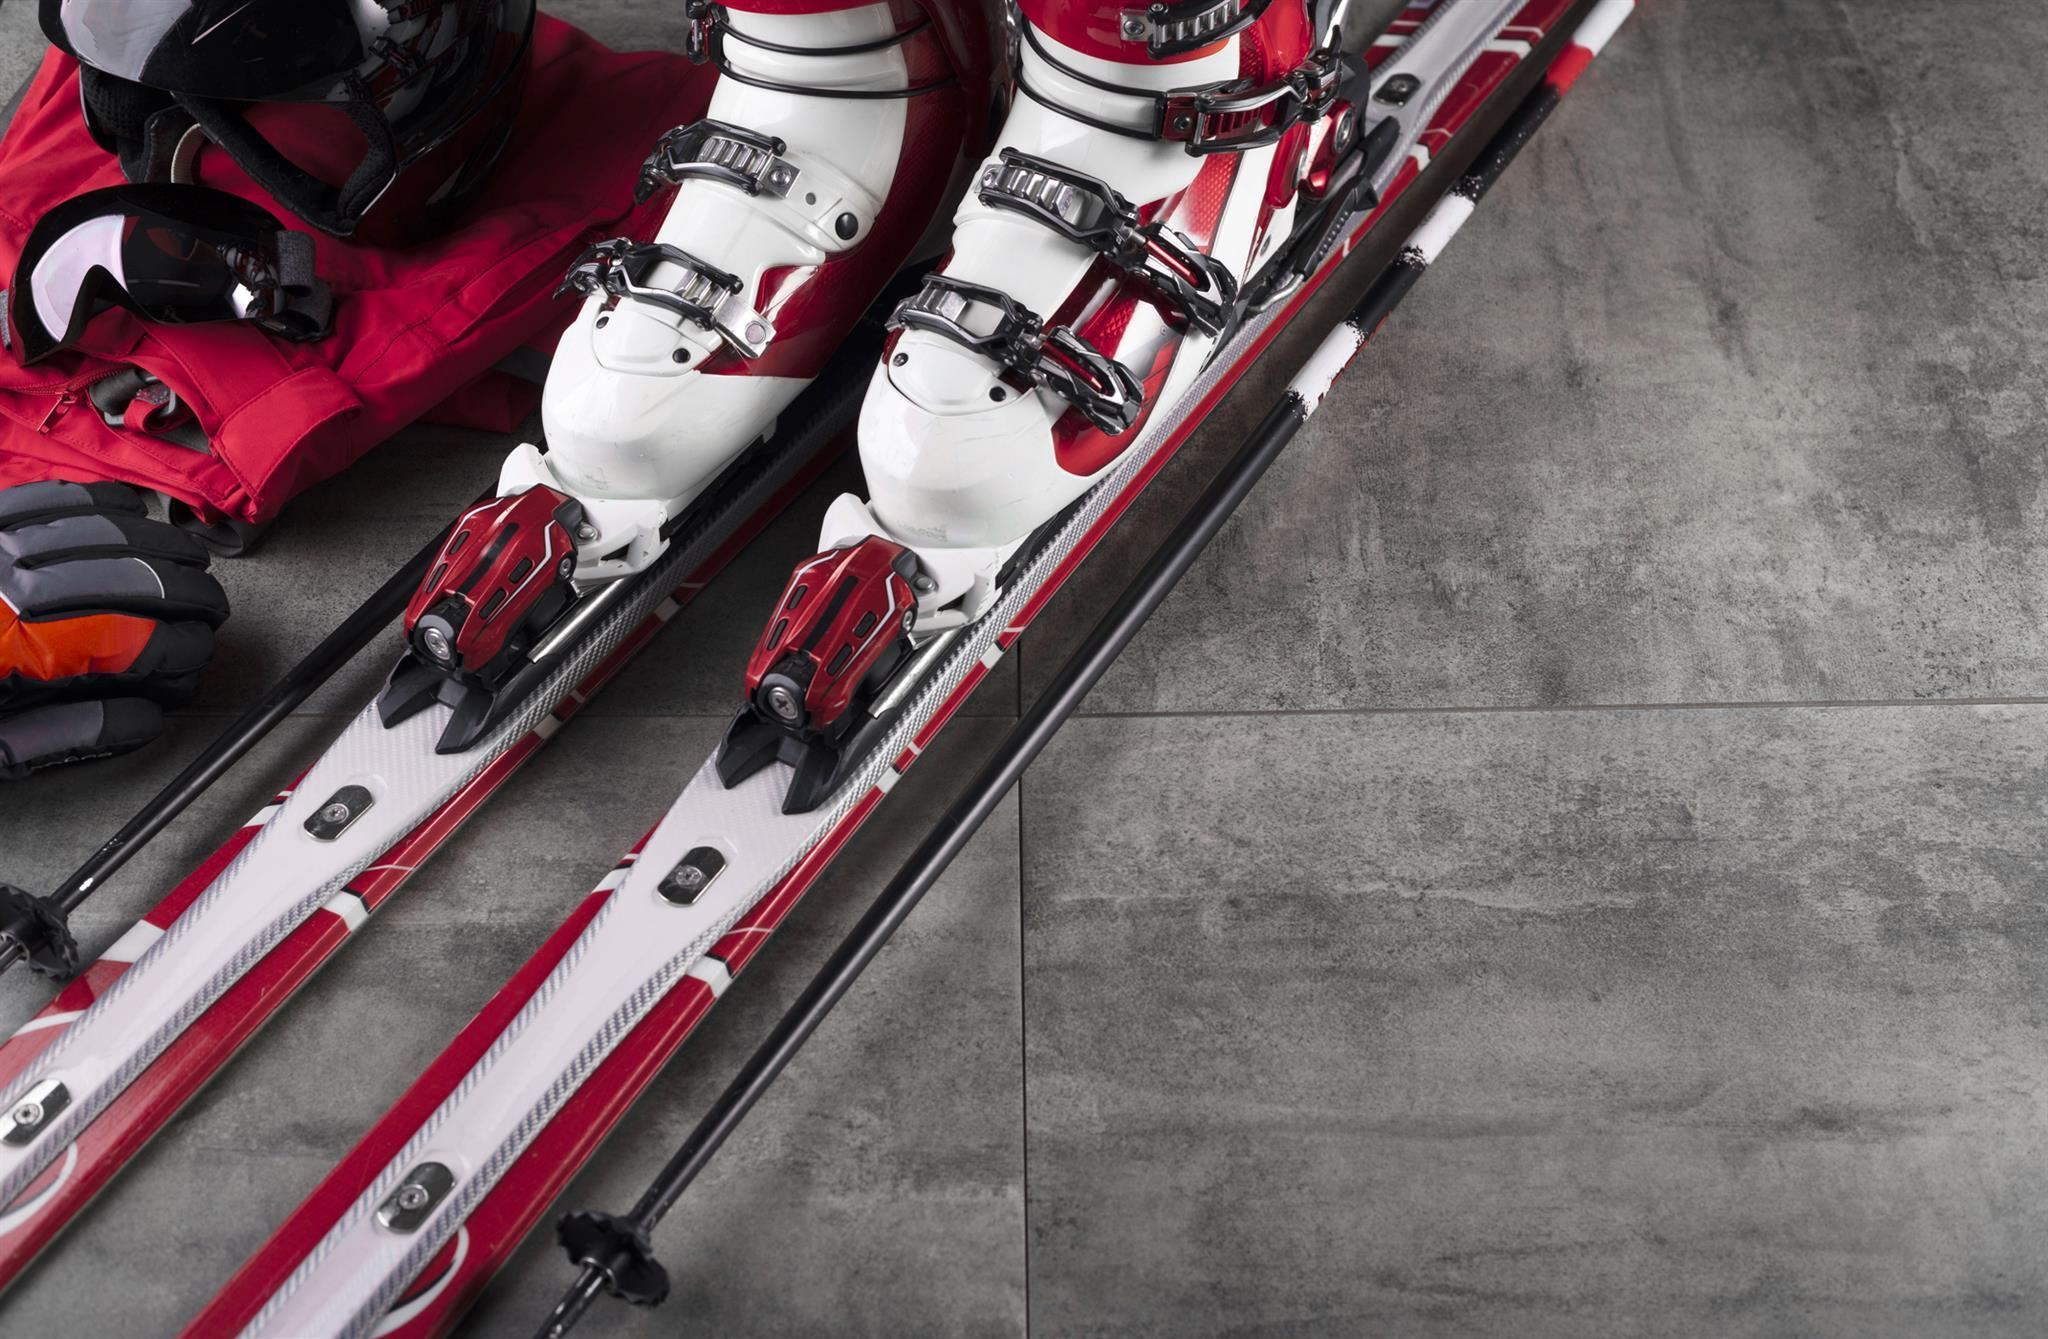 Ski rental Sportmacher - Sport Brosig